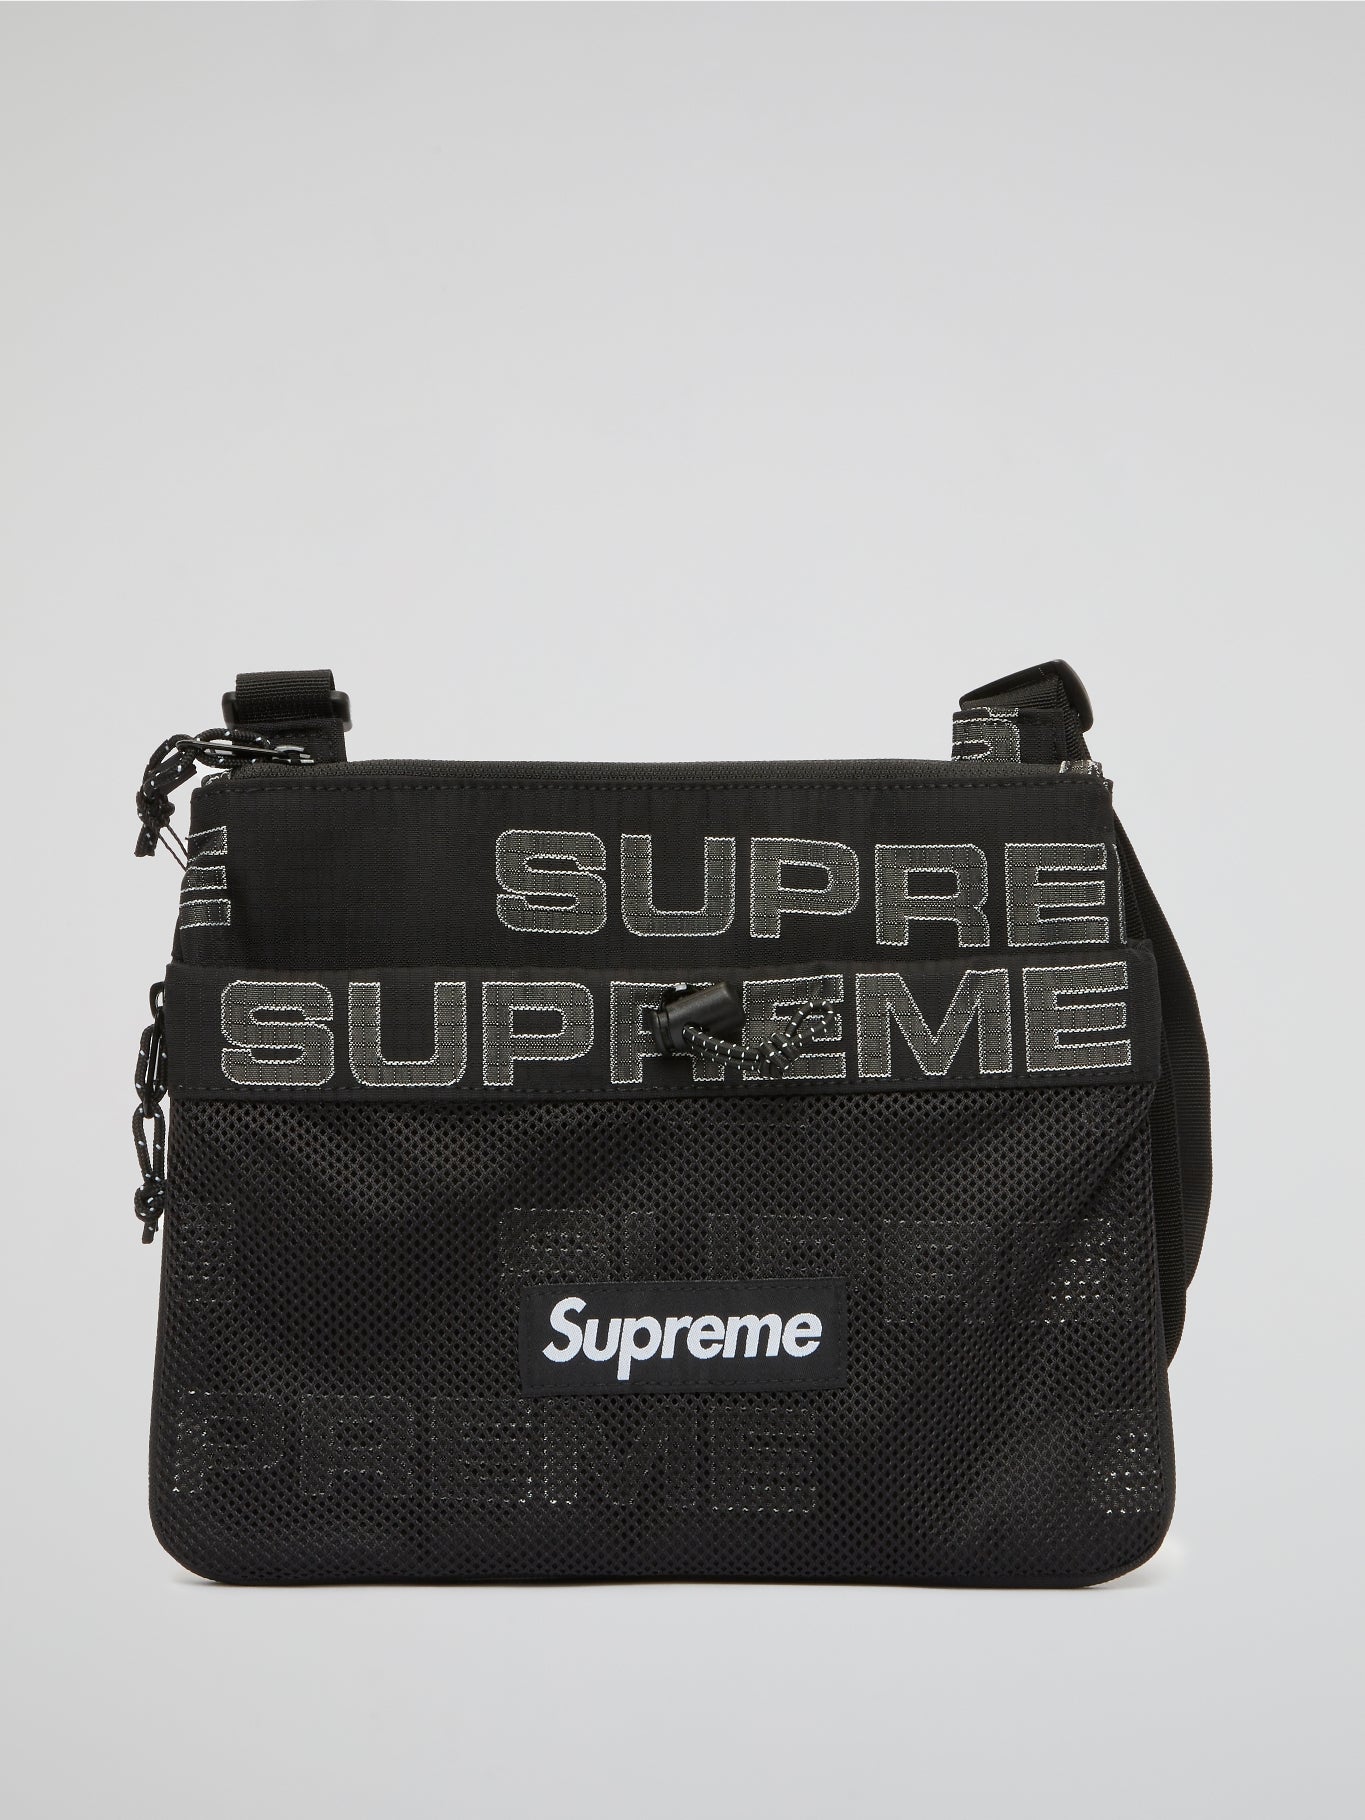 Supreme Sling Shoulder Bag